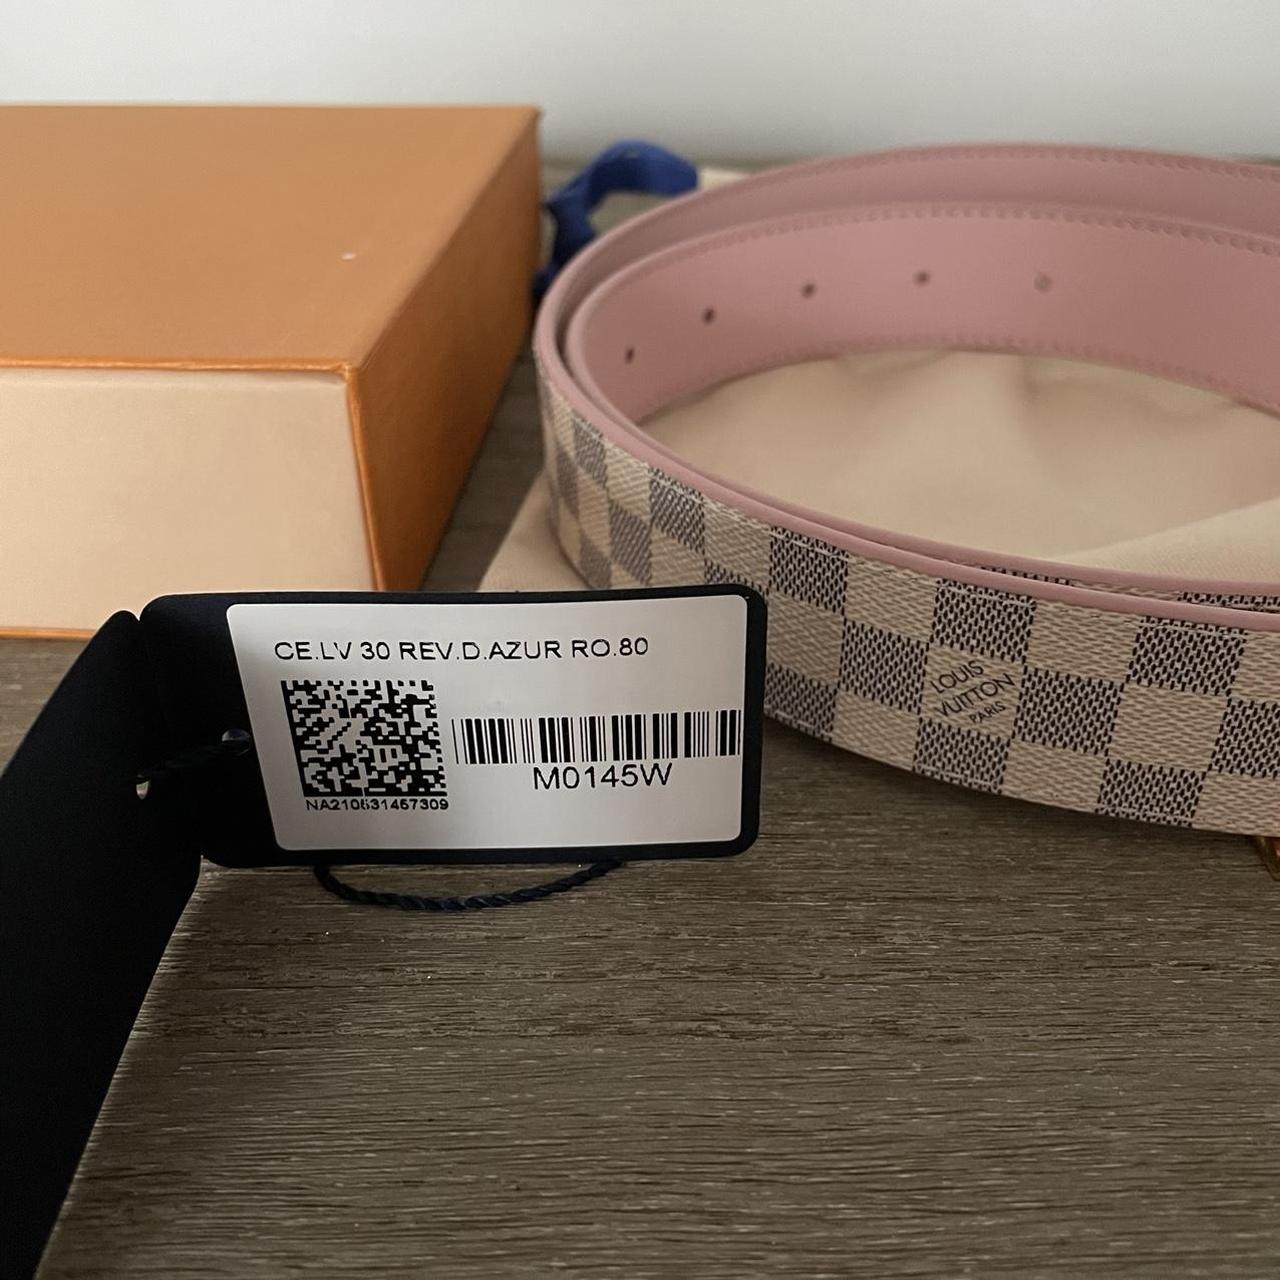 Authentic Louis Vuitton reversible belt - Depop